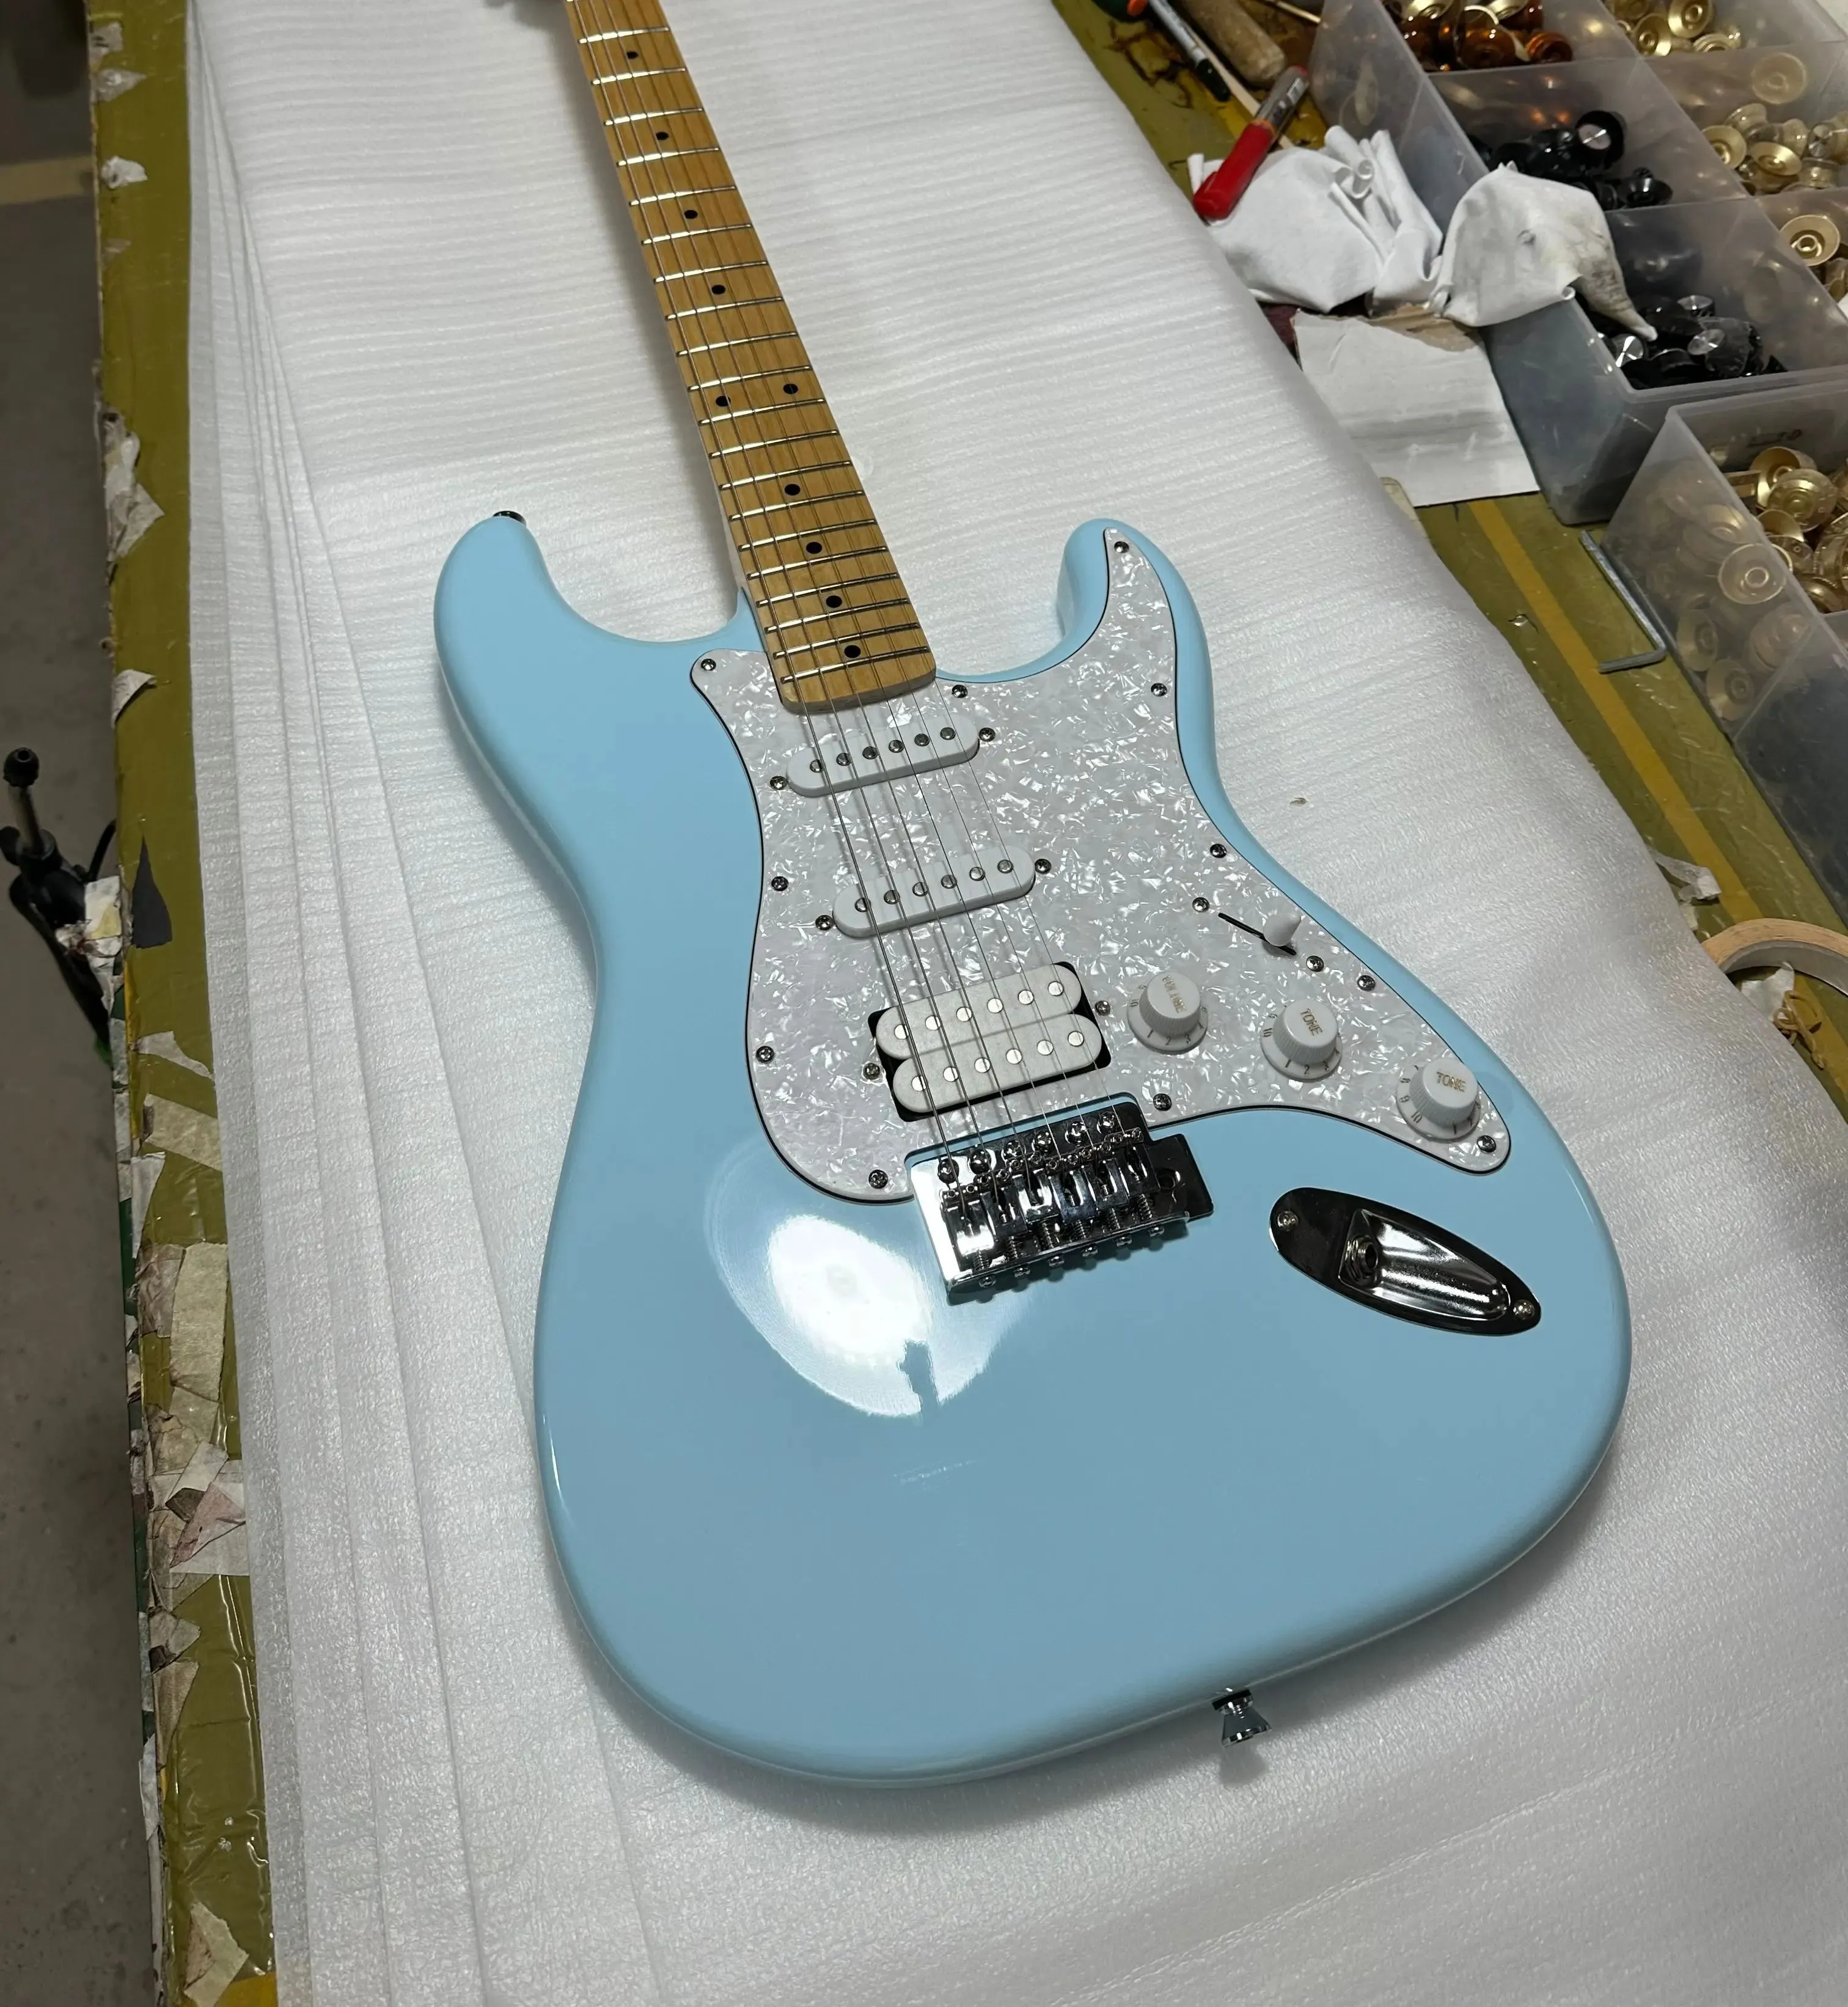 Корпус гитары S T, накладка с белым жемчугом, небесно-голубой цвет, кленовая накладка на гриф, 6 струн, гитара, бесплатная доставка, электрогитара